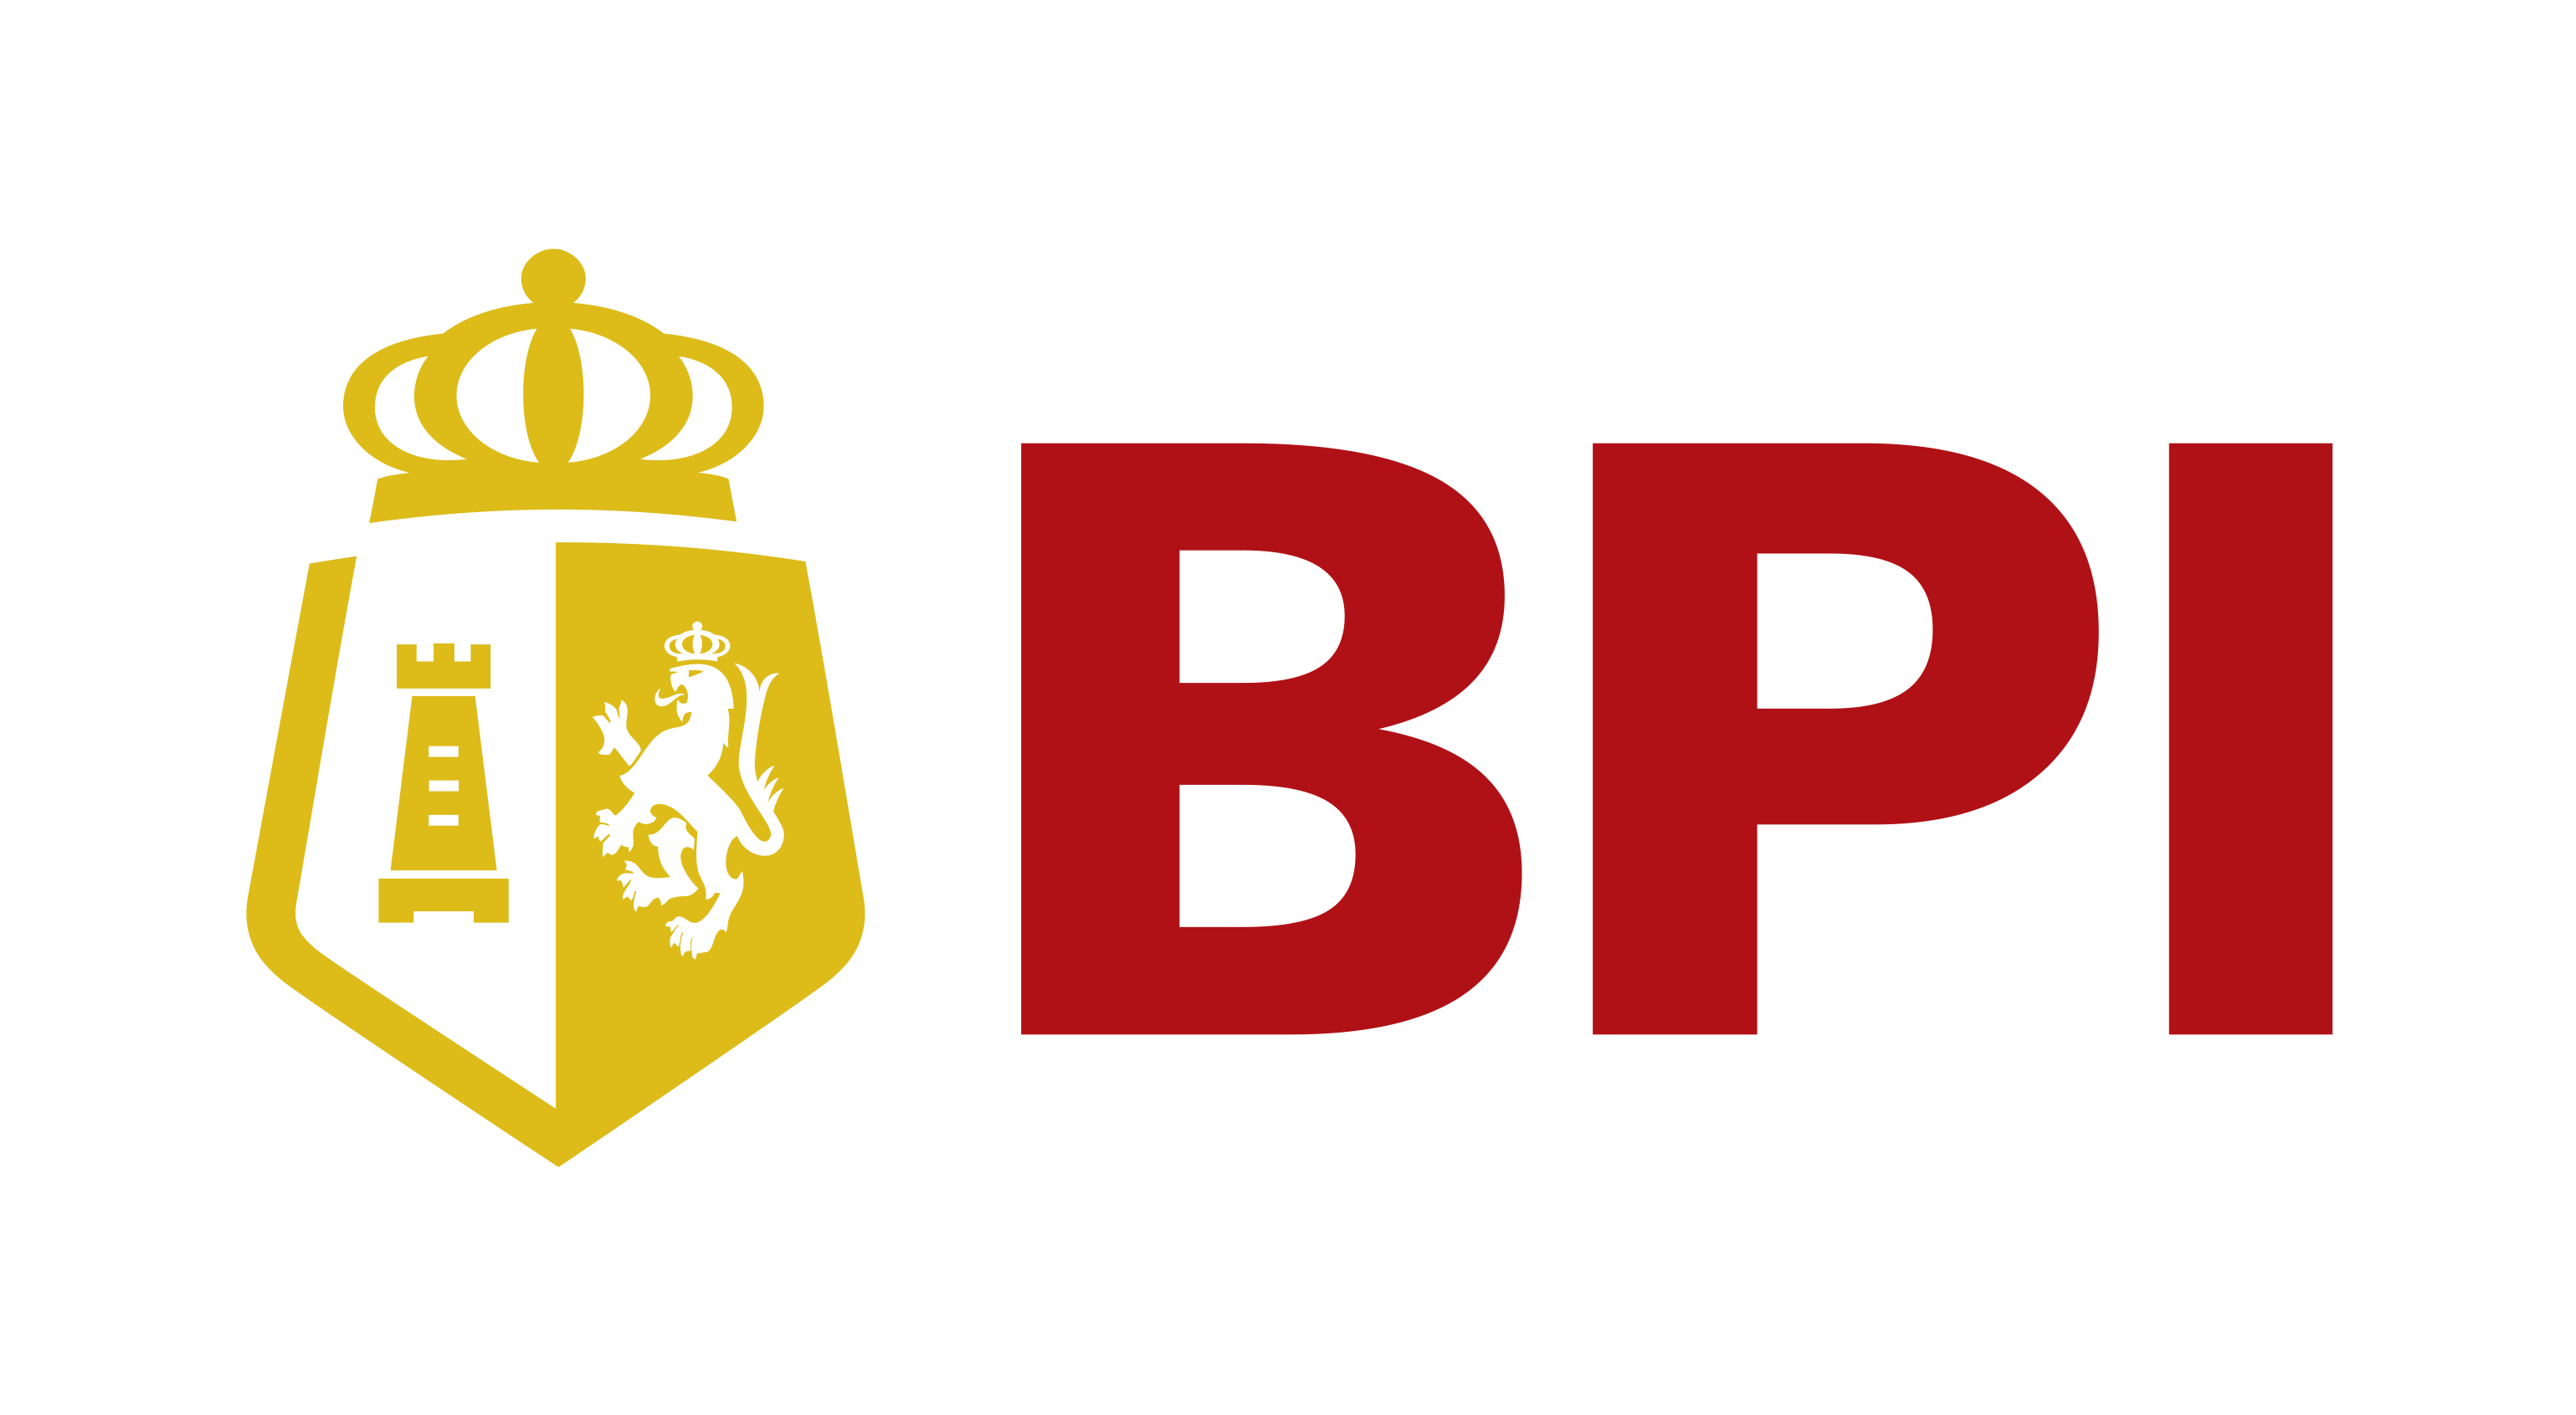 BPI